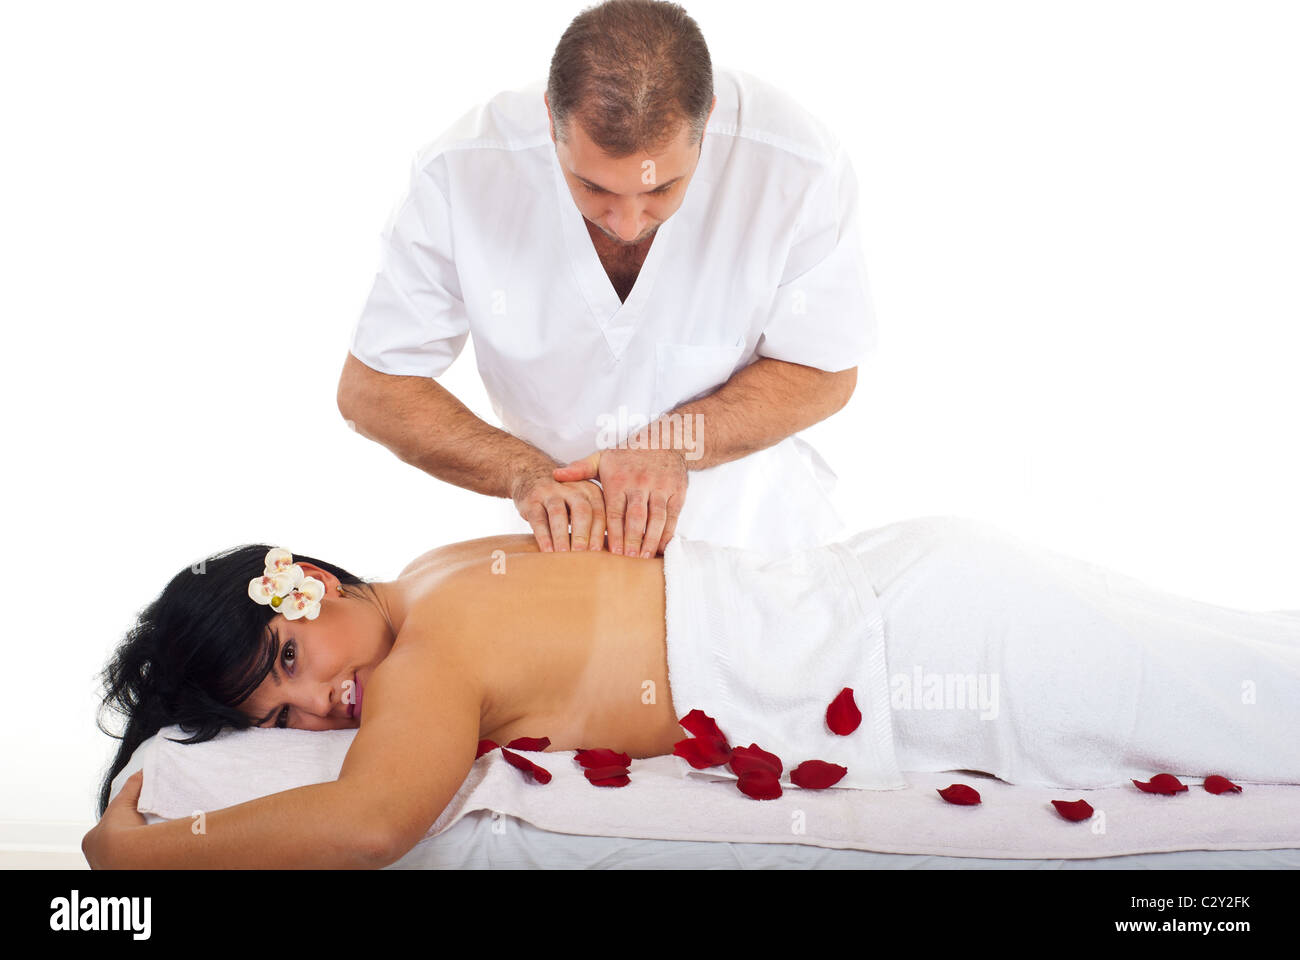 Du vrai masseur professionnel donnant un massage dos à une jeune femme brune Banque D'Images